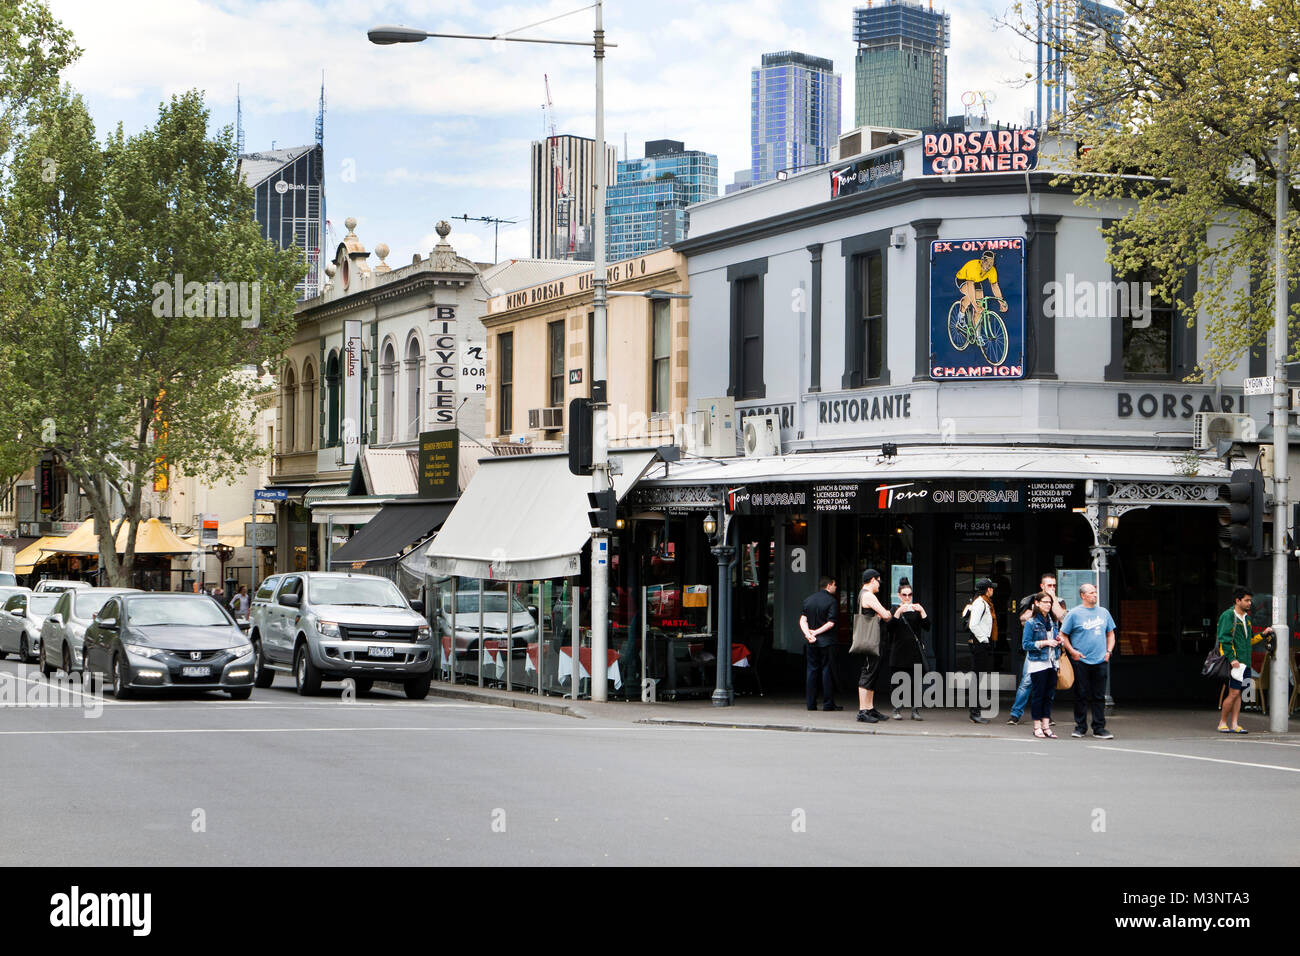 Borsaris Ecke mit Leuchtreklame für Olympiasieger Bike shop Melbourne Australien benannt Stockfoto